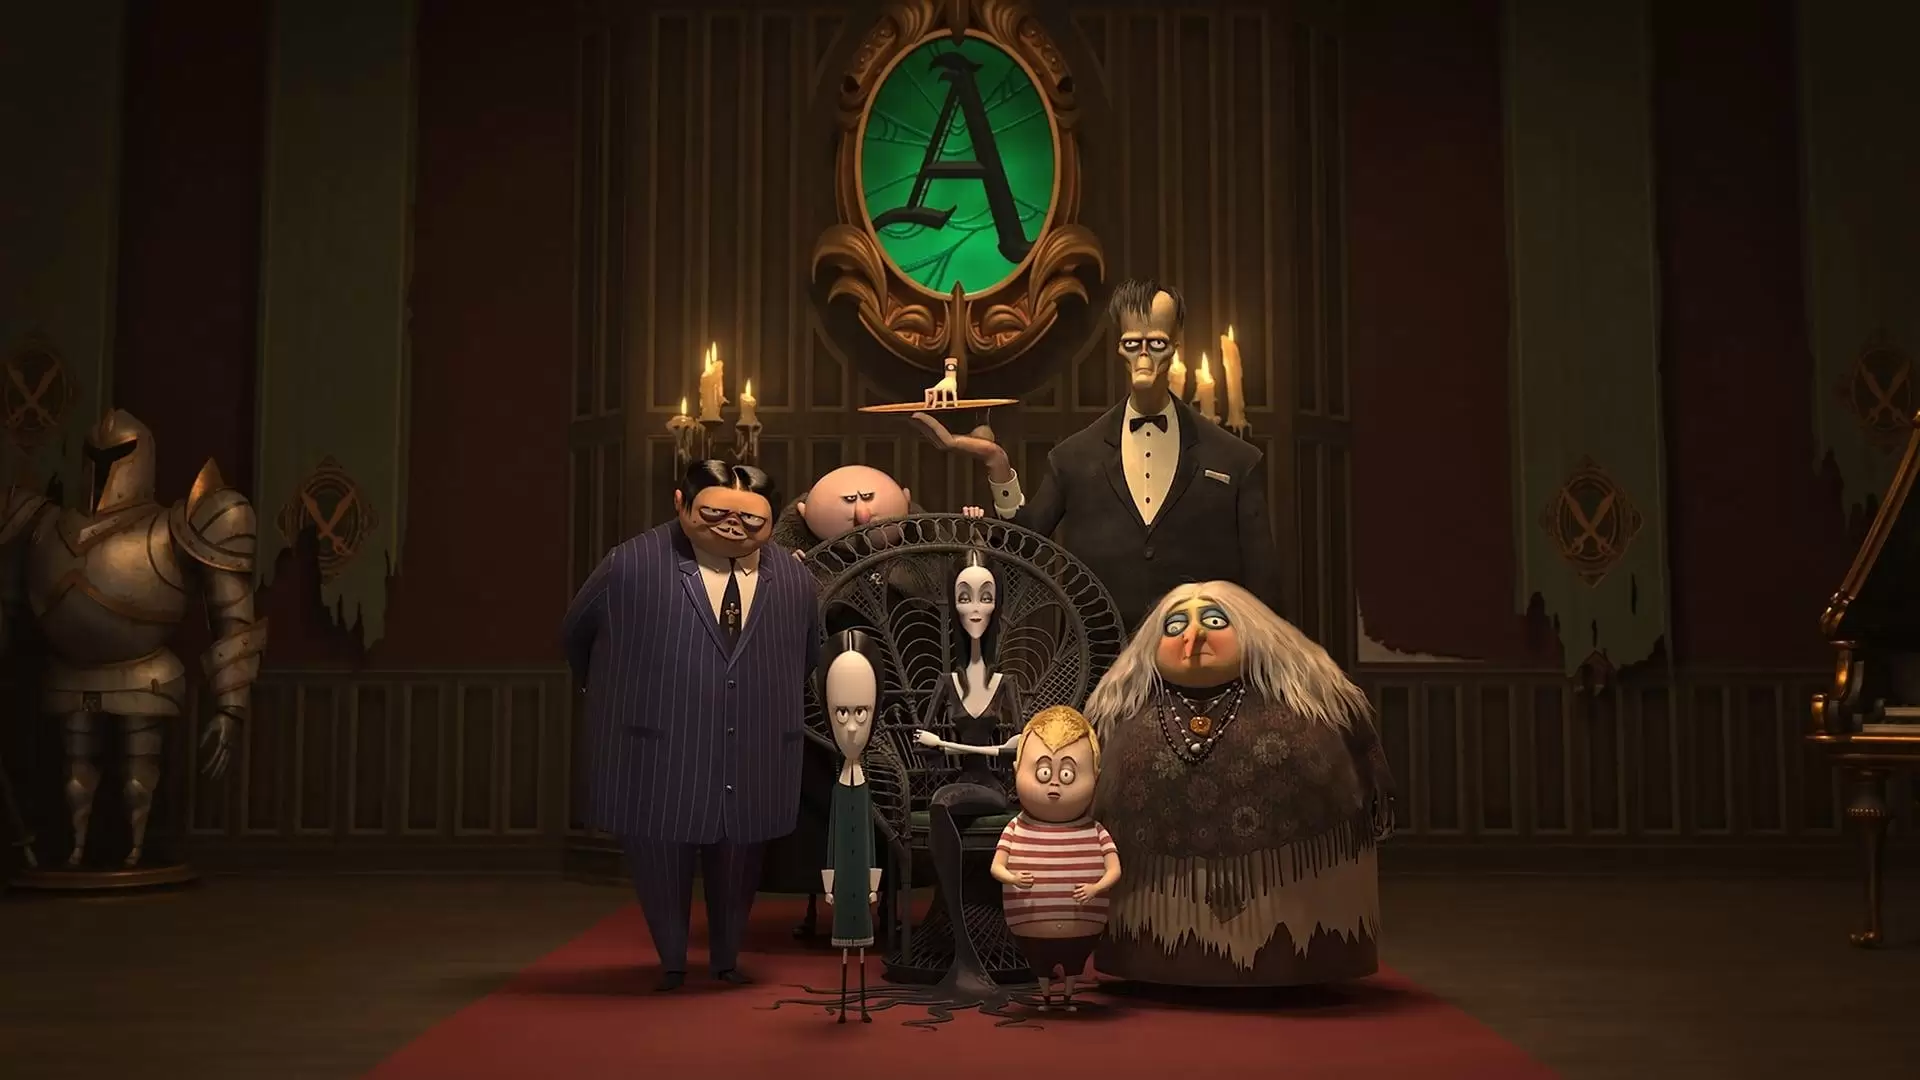 دانلود انیمیشن The Addams Family 2019 (خانواده آدامز) با زیرنویس فارسی و تماشای آنلاین